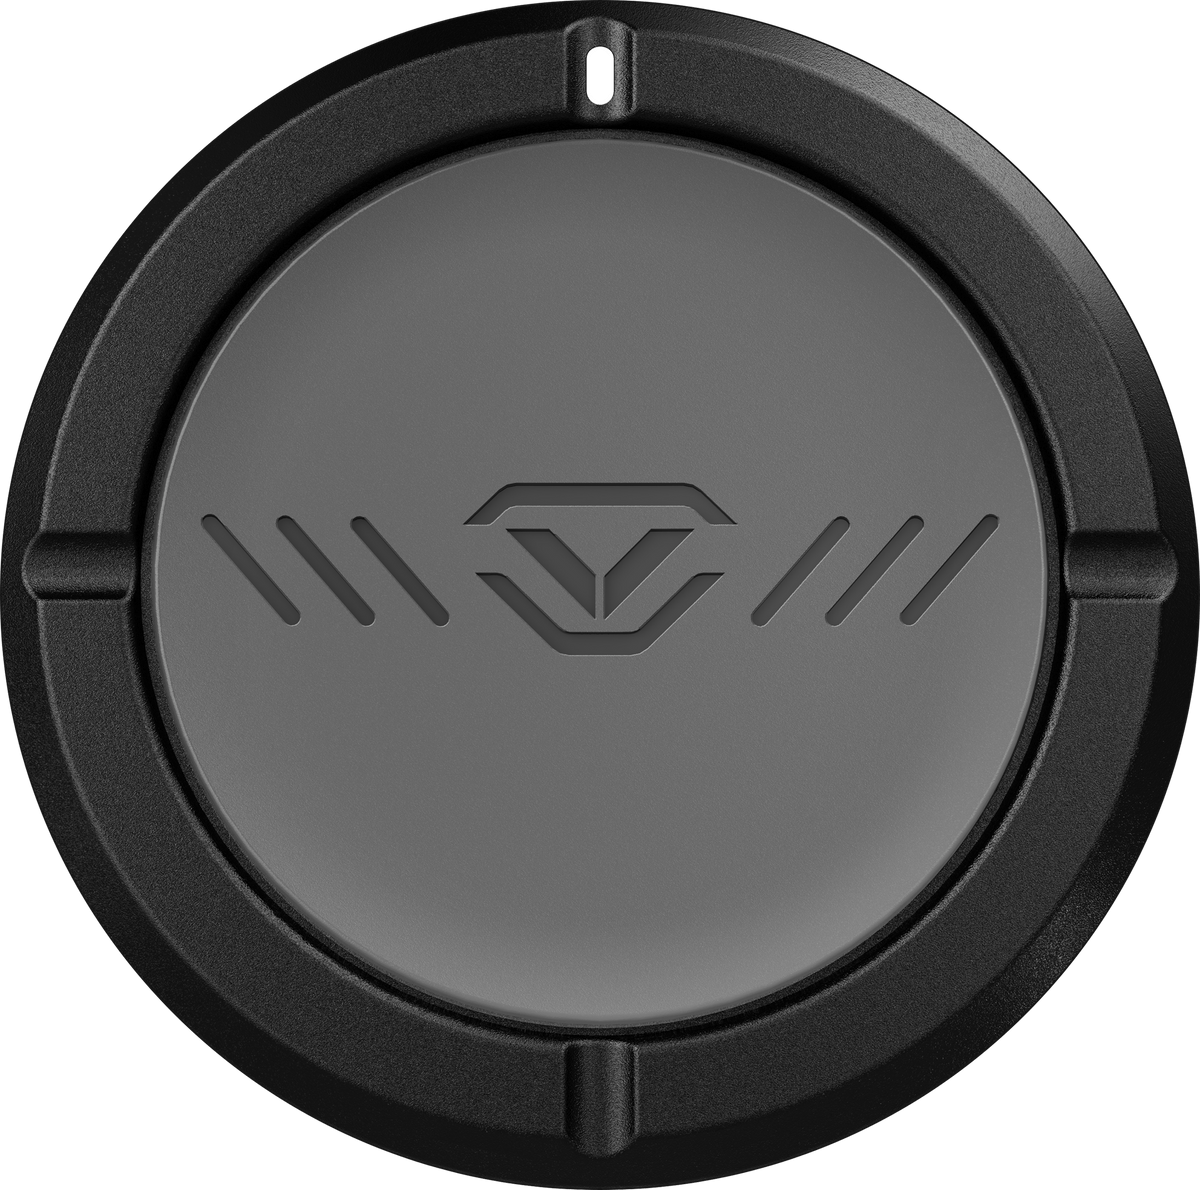 Handgun And Pistol Safes - Vaultek VT Full-Size Rugged Bluetooth Smart Safe